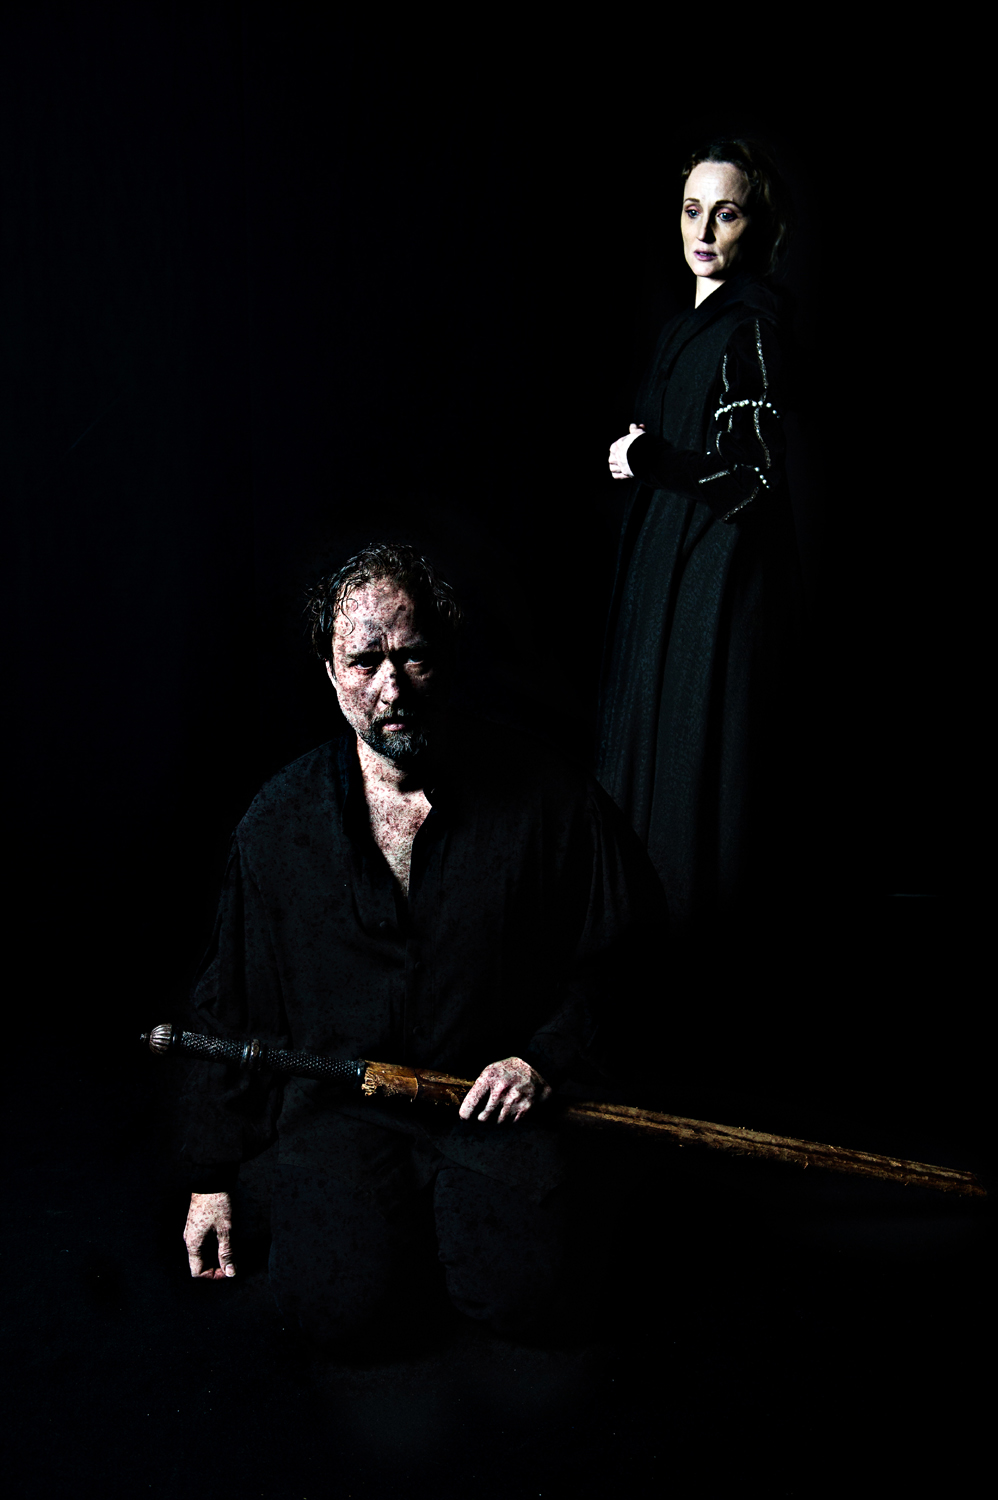 RJK - Macbeth, reż. Benoît Malmberg, fot. J-O WedinU Wedin